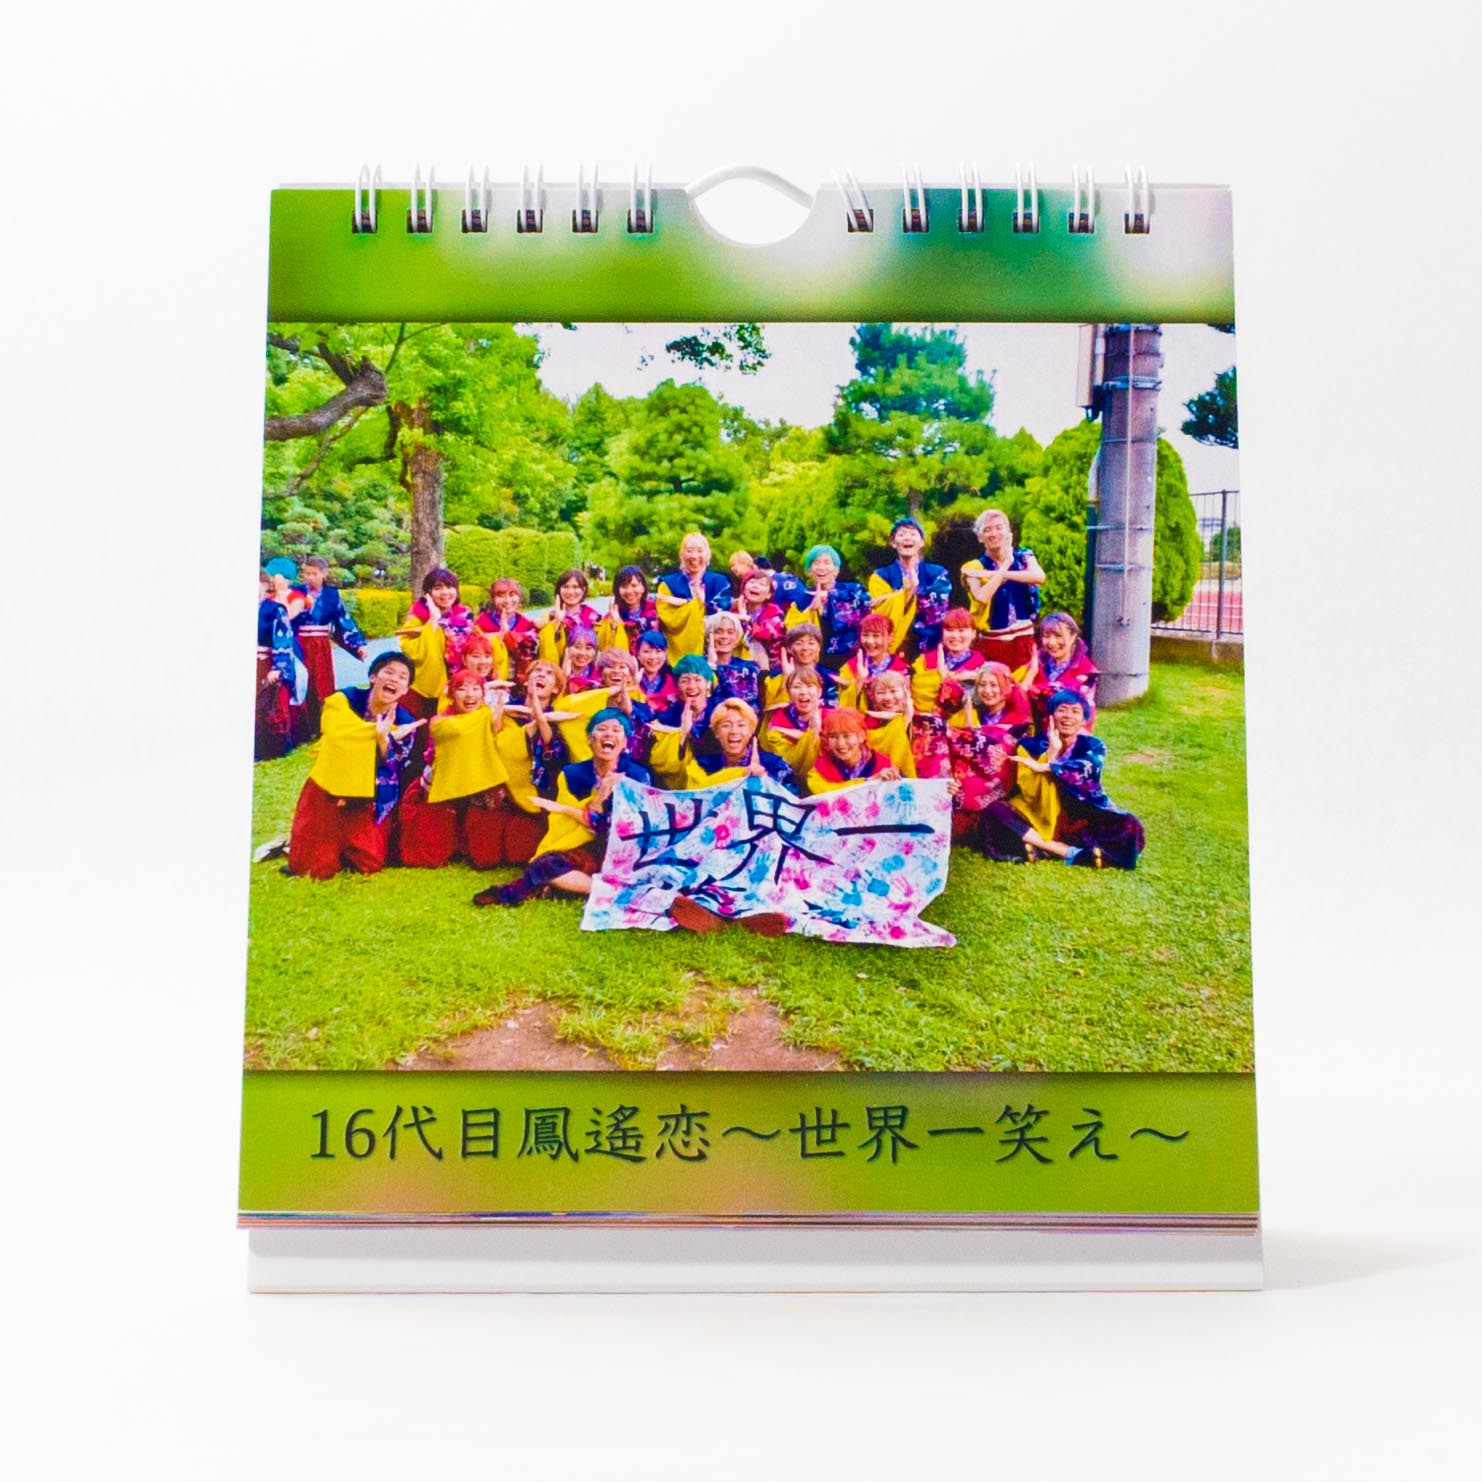 「三浦  遥 様」製作のオリジナルカレンダー